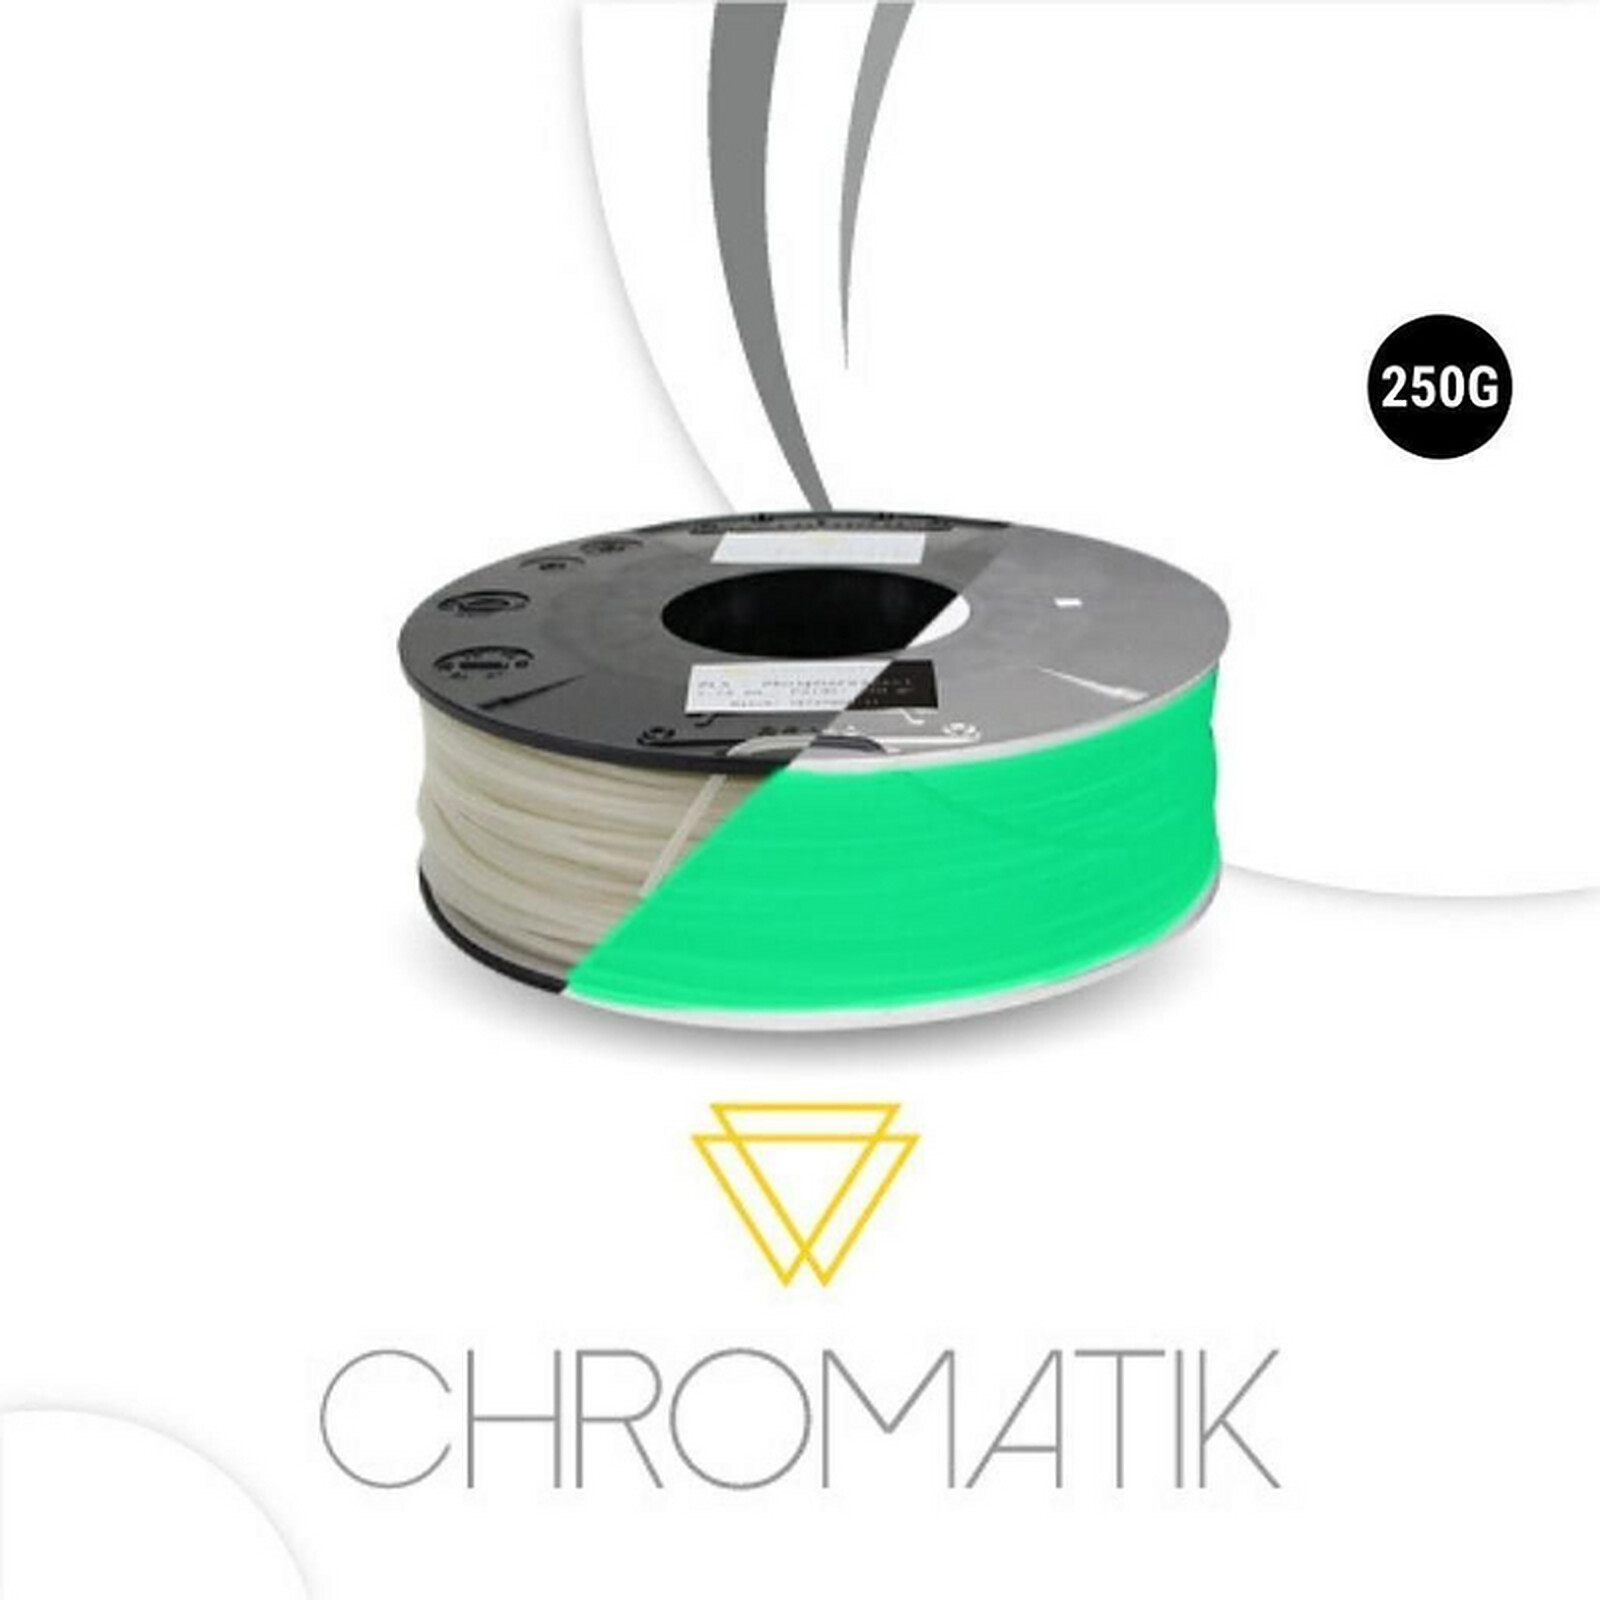 Chromatik - PLA Noir 2200g - Filament 1.75mm - Filament 3D - LDLC